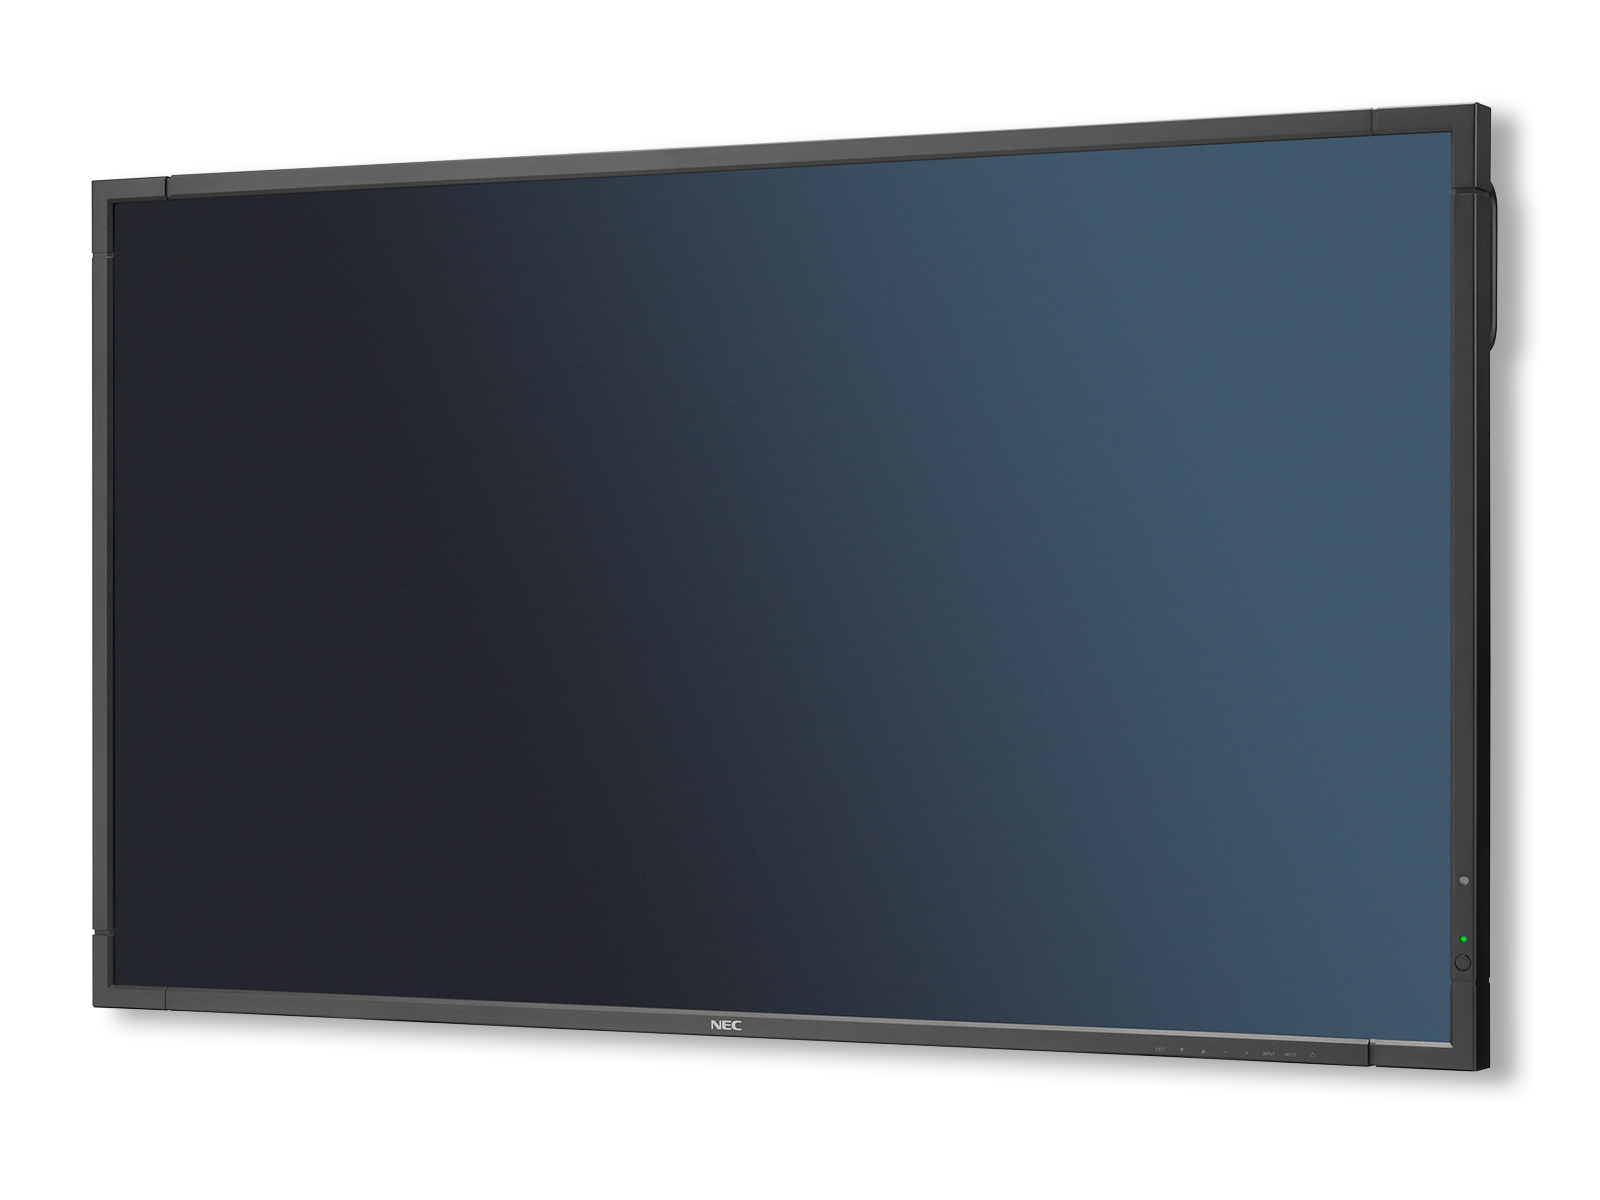 Black Adjustable Tilt/Tilting Wall Mount Bracket for NEC P463 46 inch LED Commercial Display 